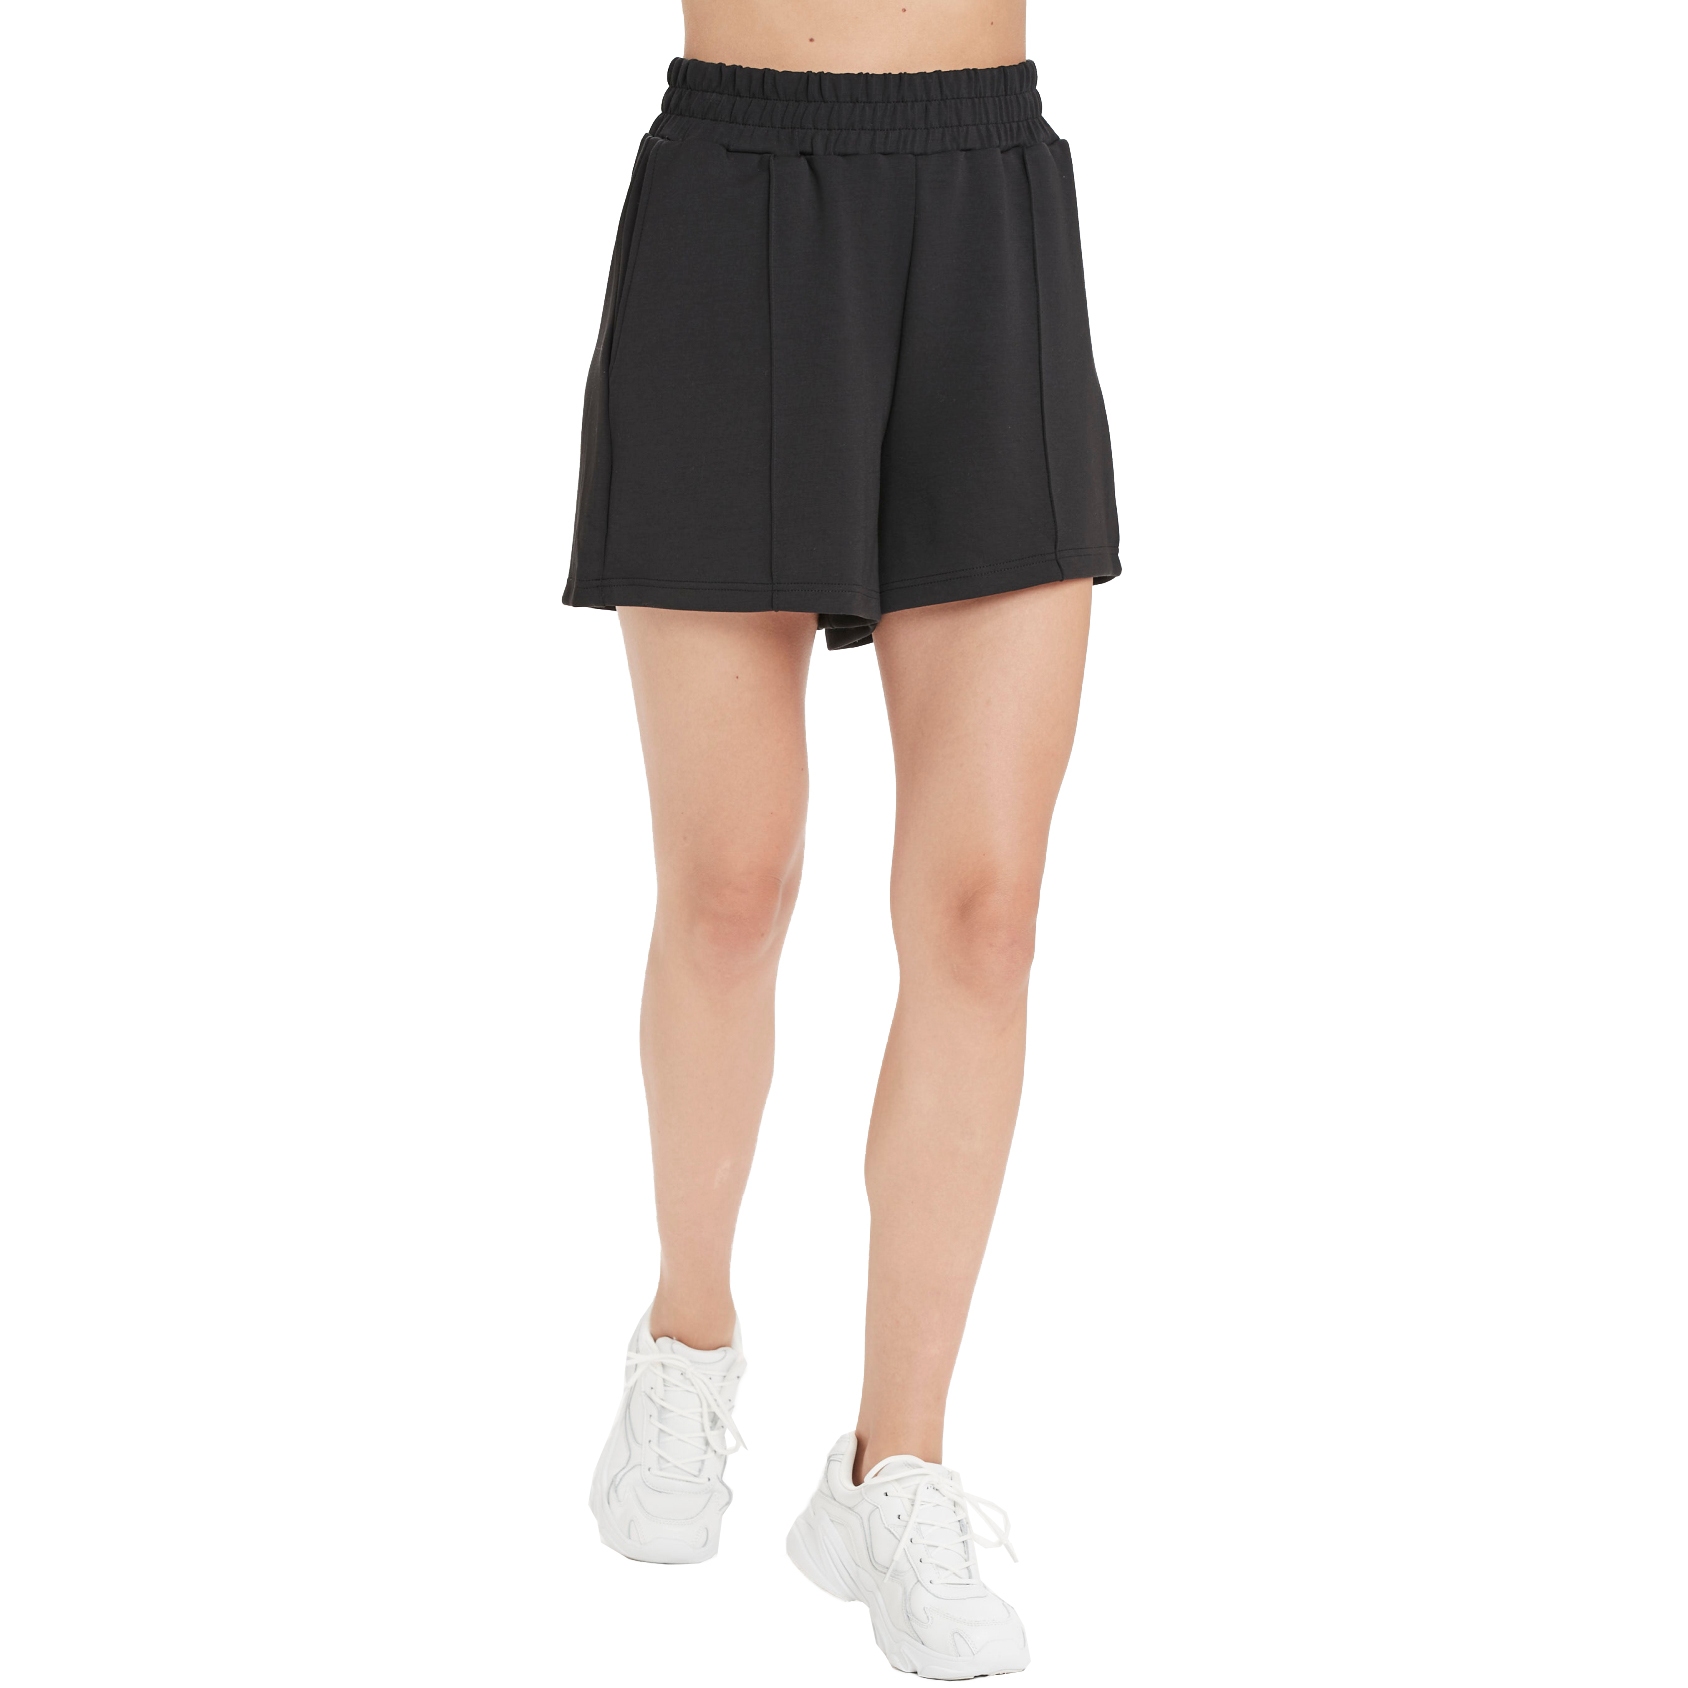 Produktbild von Athlecia Jacey Damen High Waisted Lounge Shorts - Schwarz